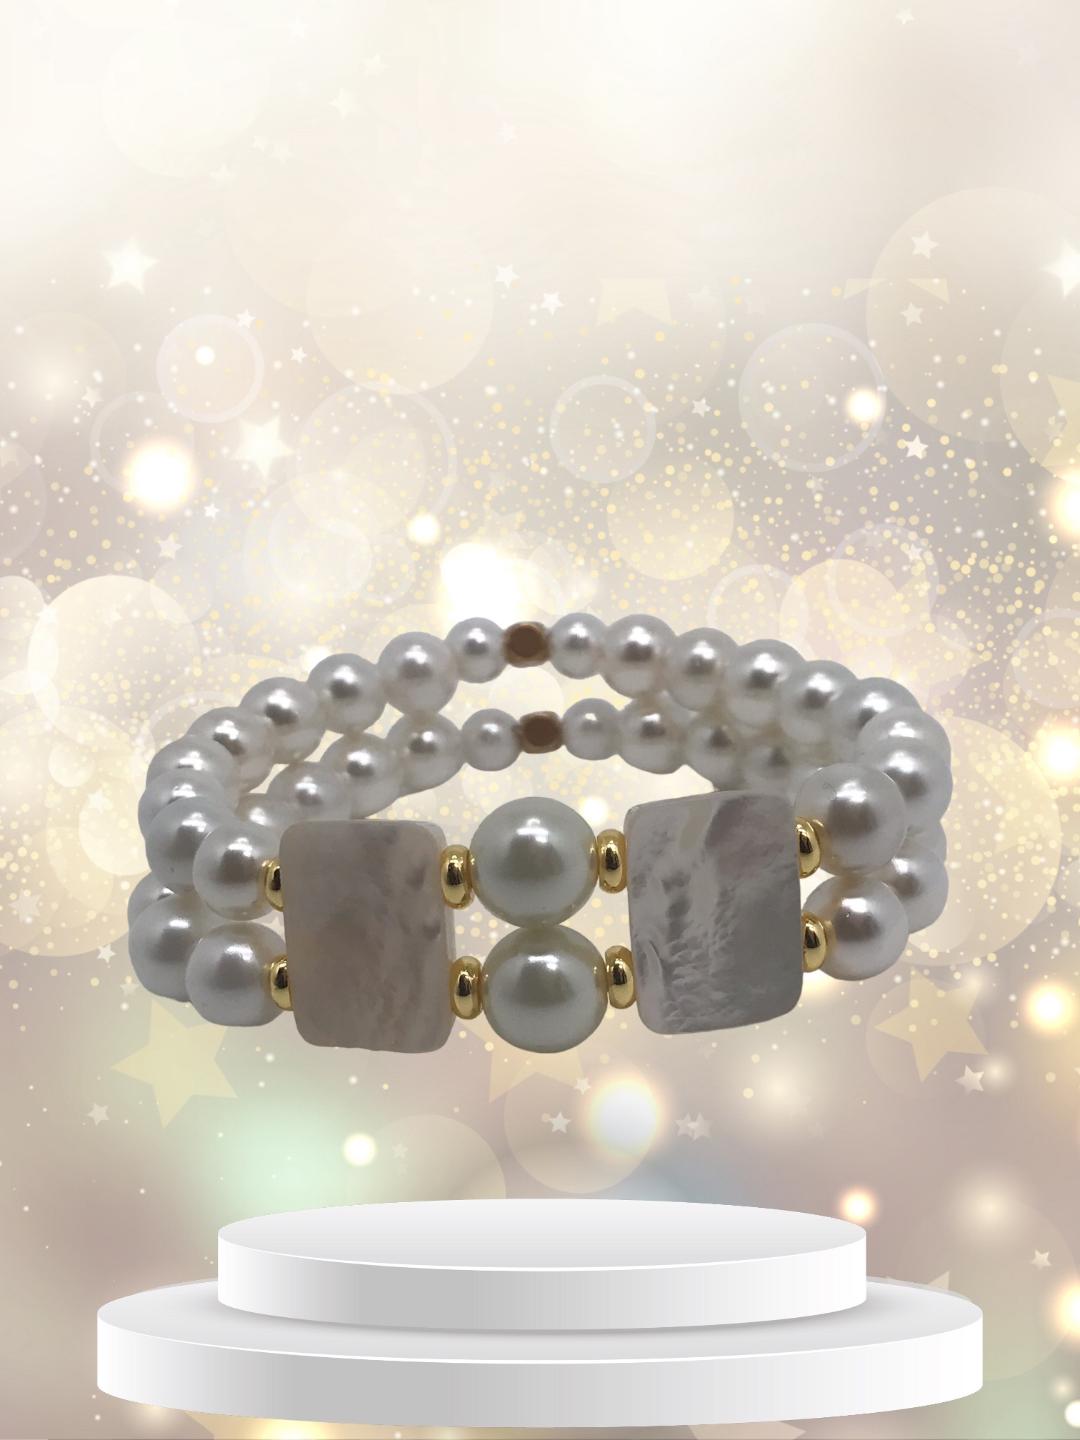 Bracelet double-rangs perles de culture et nacre 1073